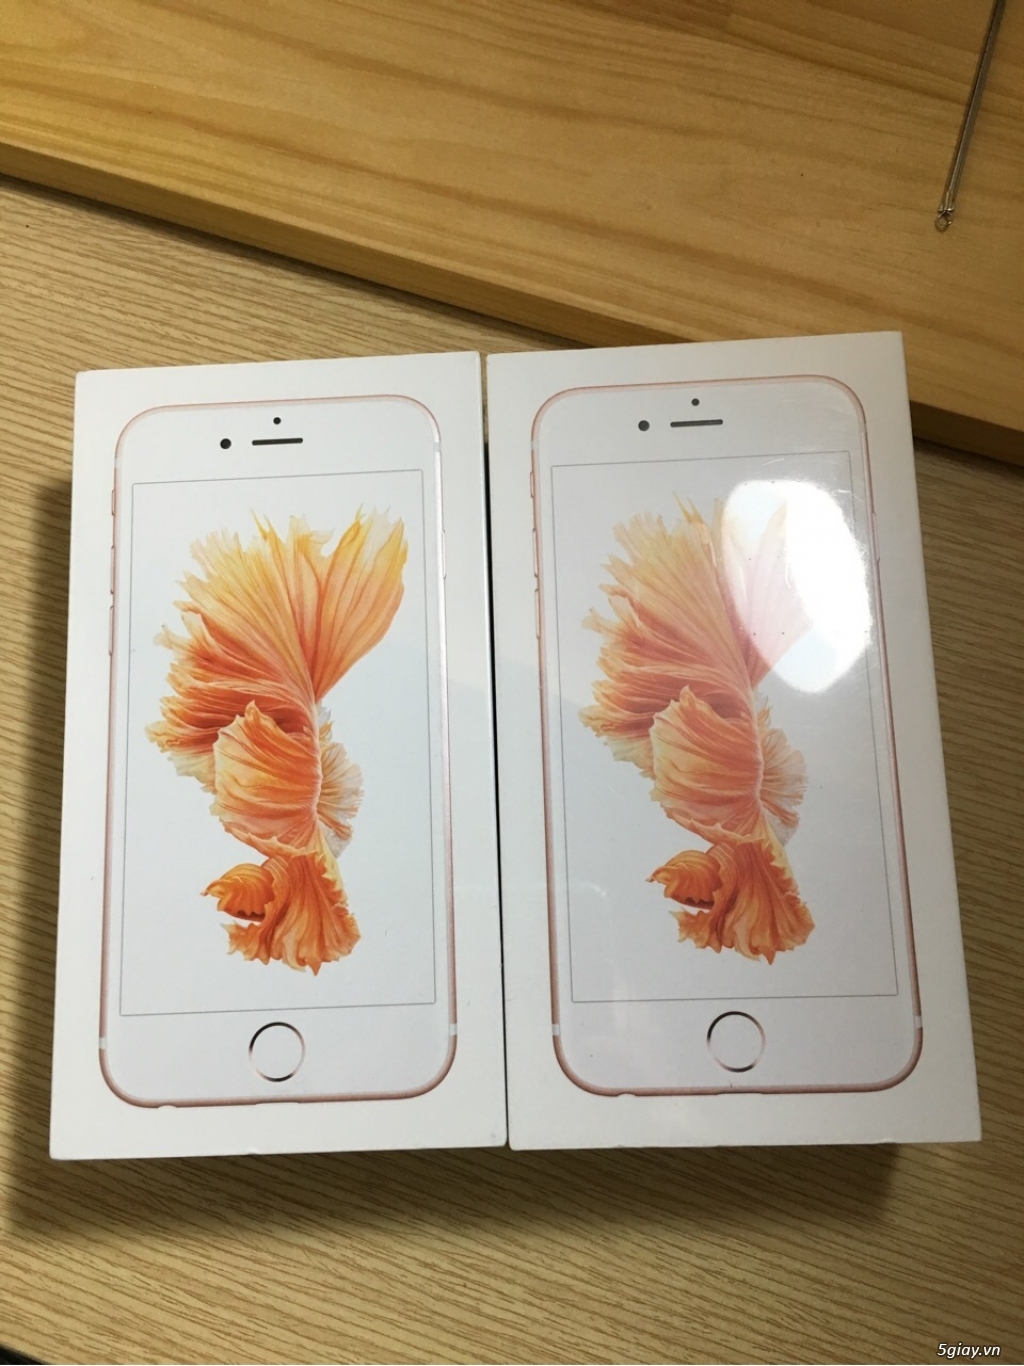 Iphone 6s 128gb màu rose gold hàng xách tay Úc sealed - 1